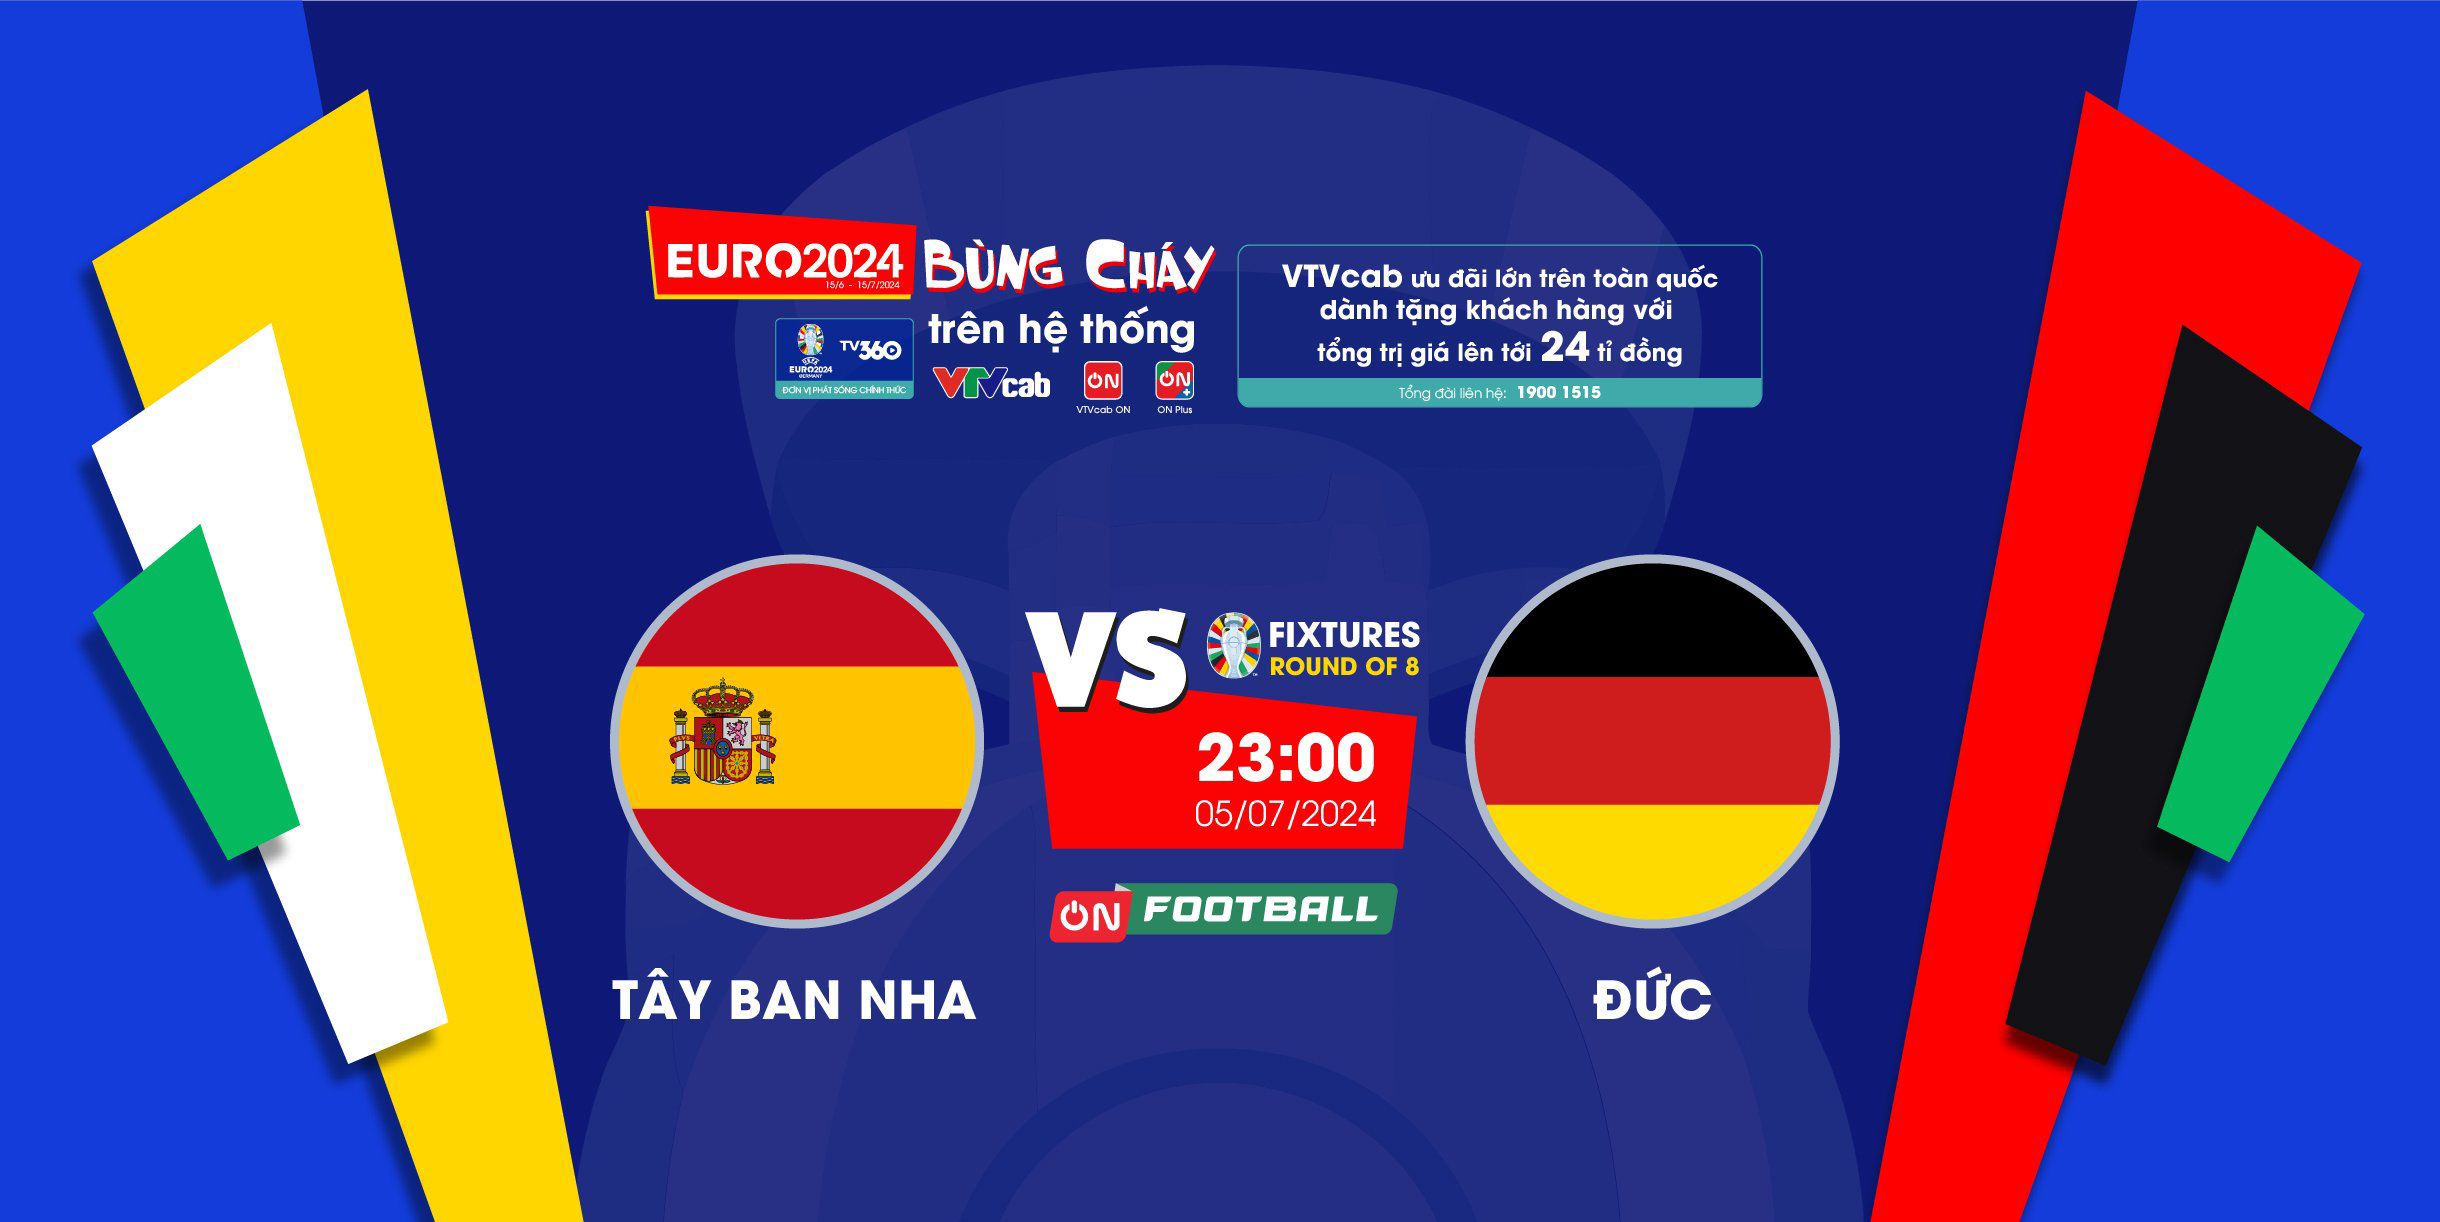 4 trận tứ kết Euro 2024: Tranh tài đỉnh cao, xem trực tiếp trên VTVcab - 1